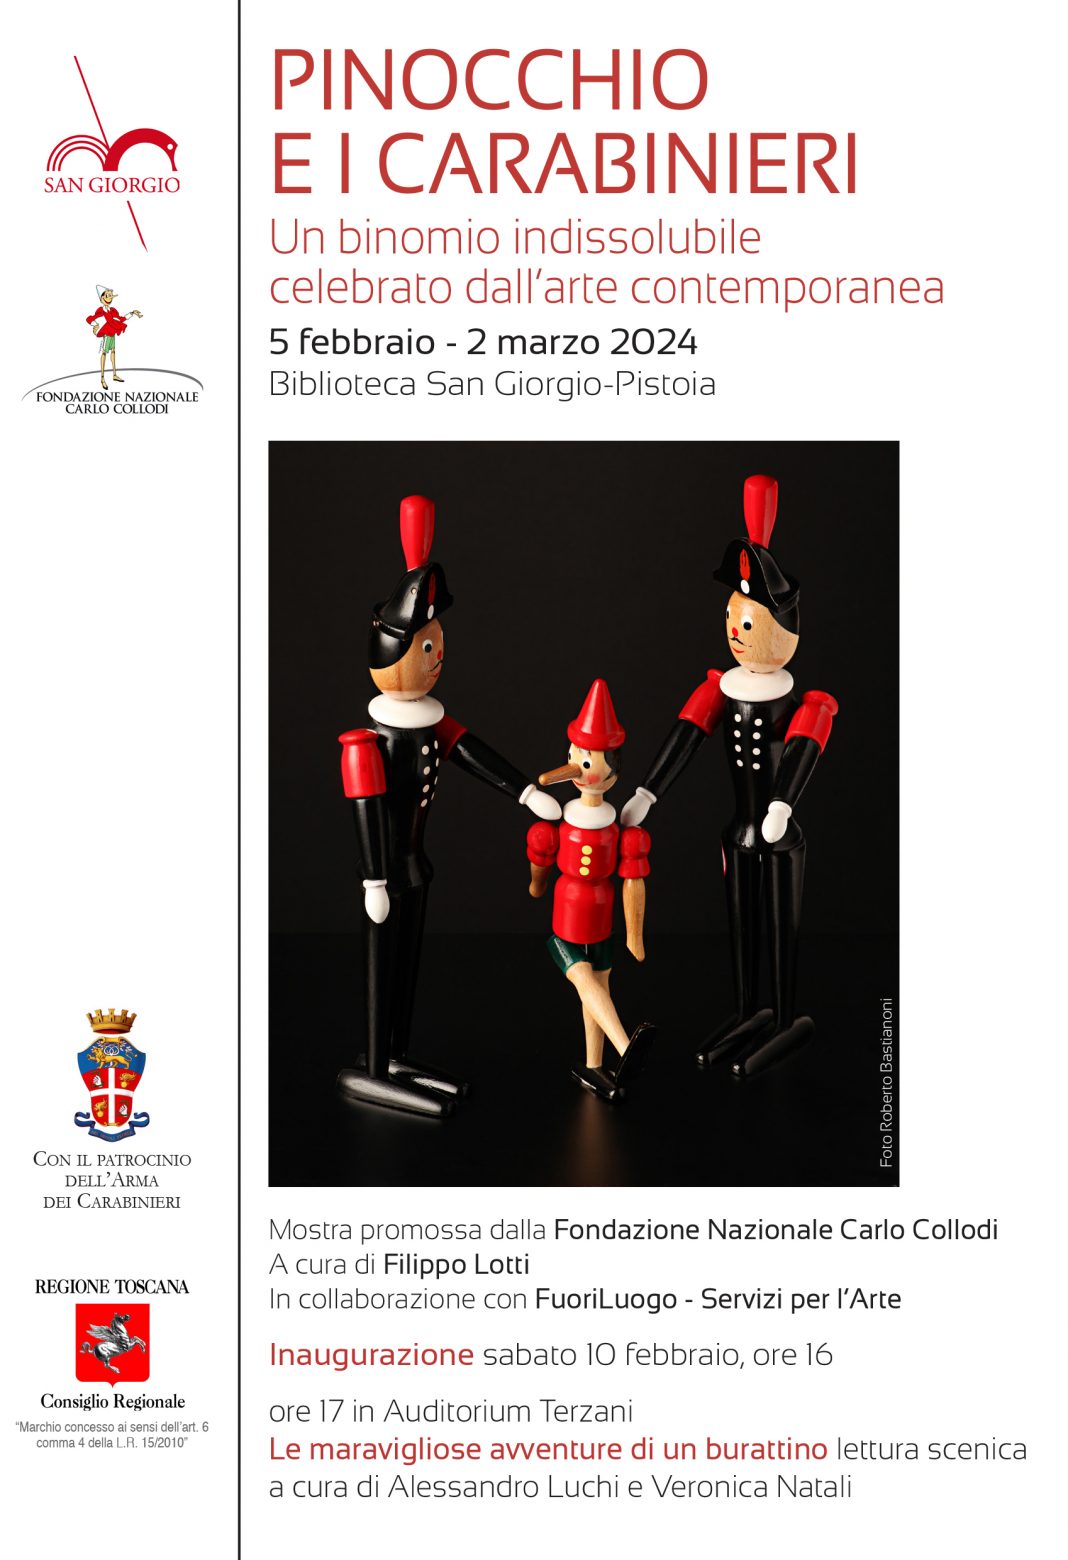 Pinocchio e i Carabinieri: un binomio indissolubile celebrato dall’arte contemporaneahttps://www.exibart.com/repository/media/formidable/11/img/6e0/PINOCCHIO-Invito_1-1068x1560.jpg